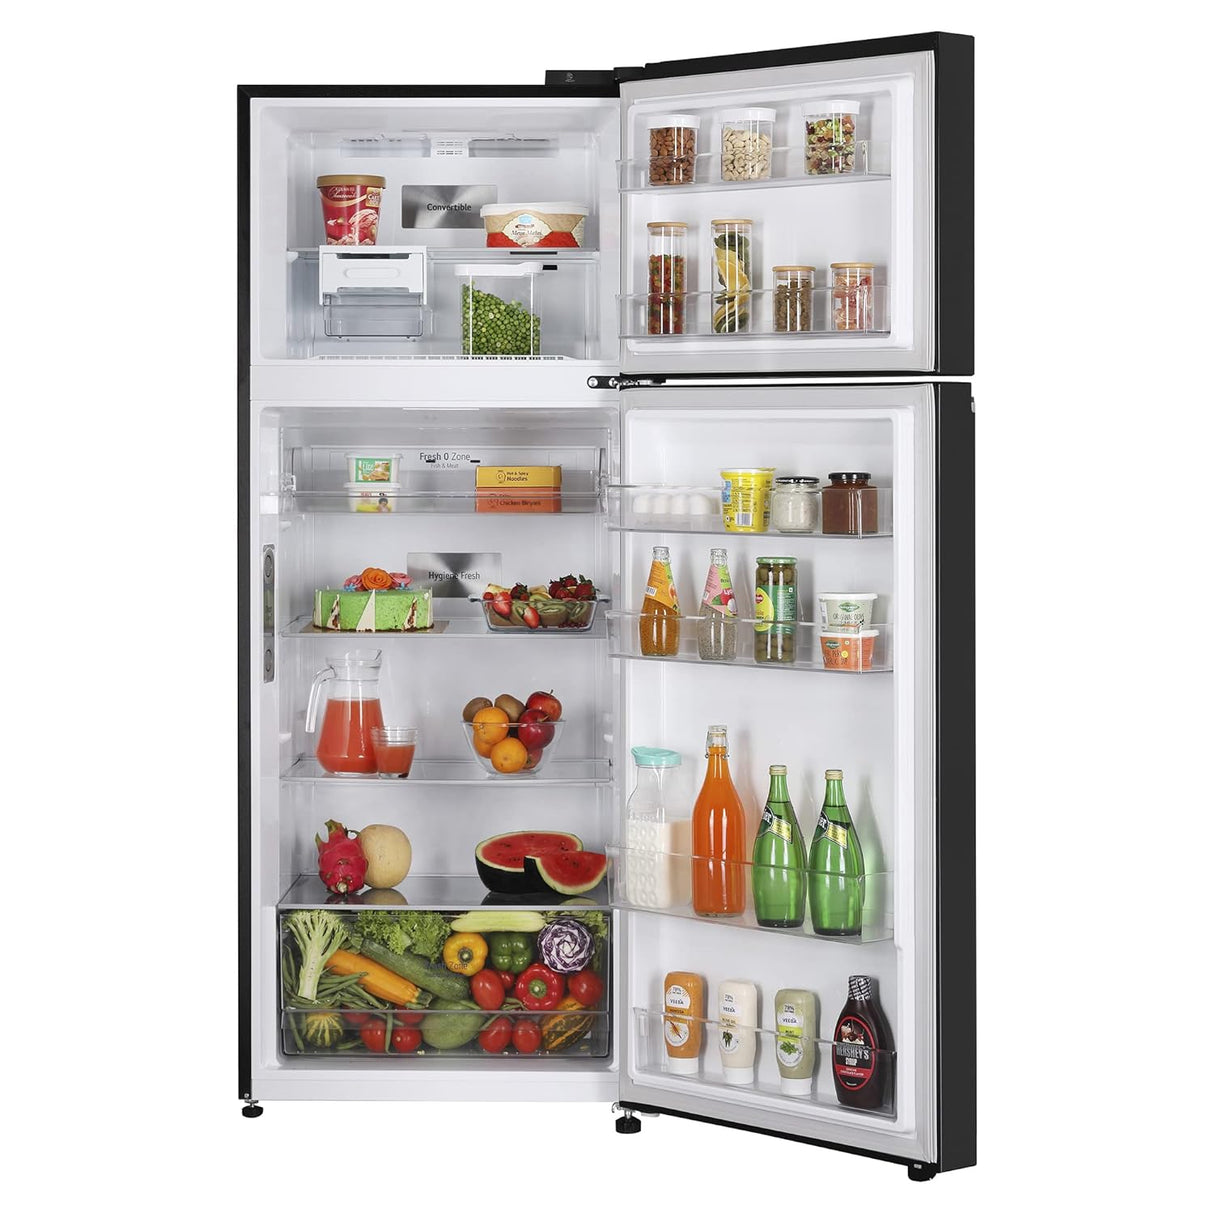 Best Double Door Refrigerator: LG 423L - Smart Inverter, Frost-Free